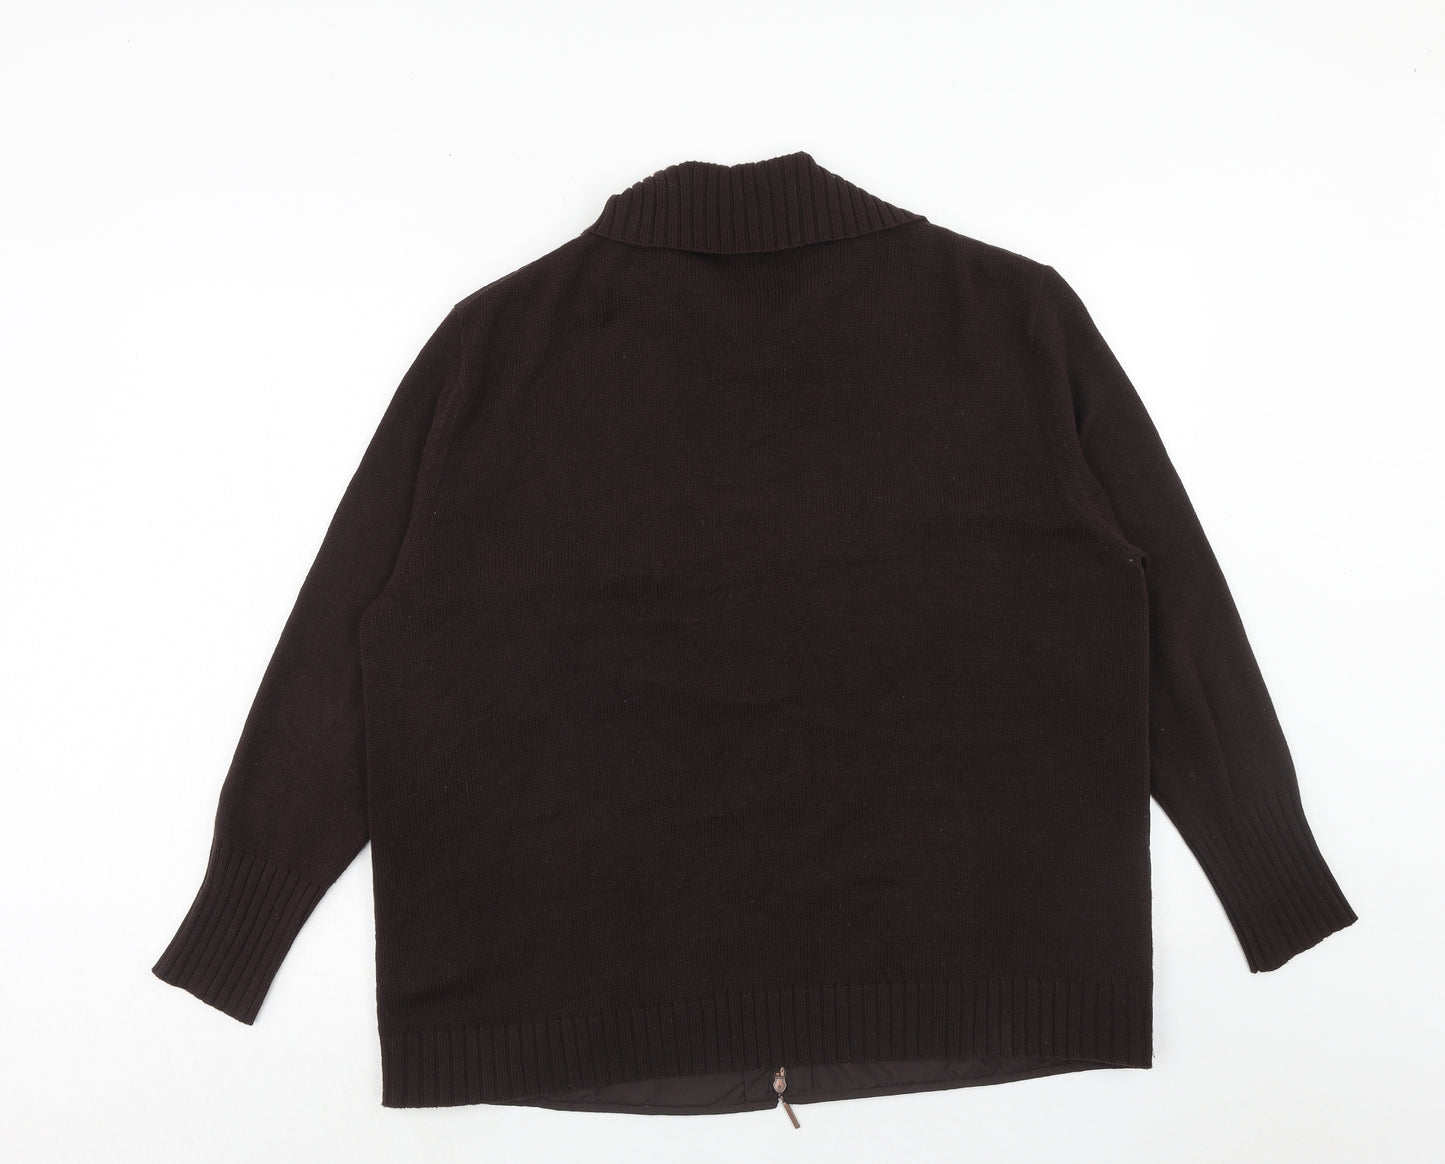 Gerry Weber Womens Brown Jacket Size 22 Zip